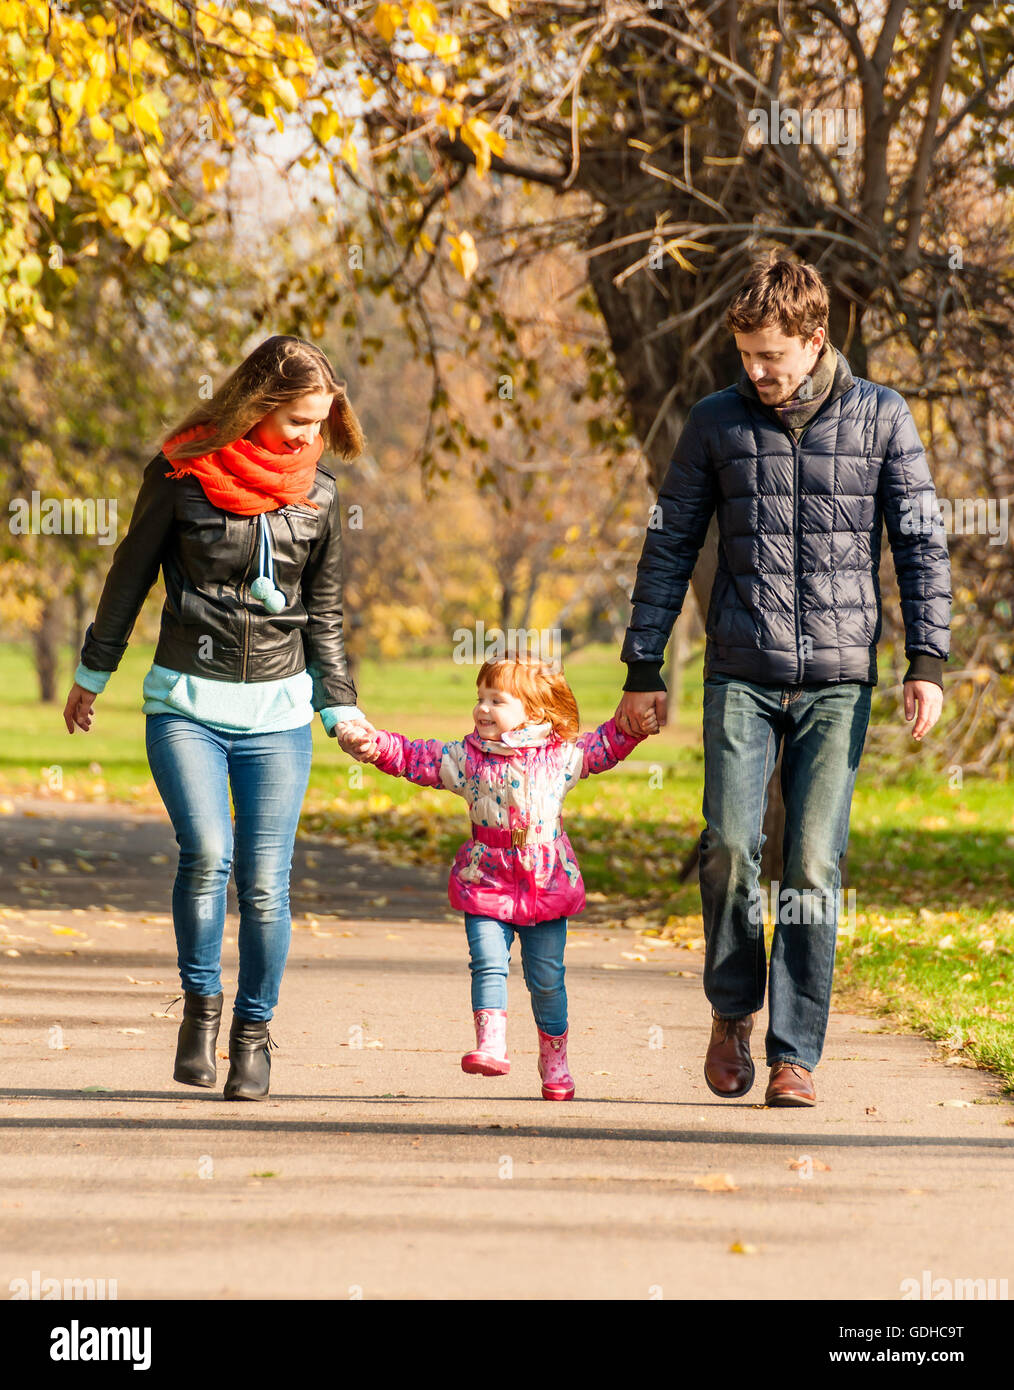 Мама гуляет в парке. Семья на прогулке в парке. Прогулка в парке с детьми. Мама с ребенком на прогулке. Родители с детьми гуляют в парке.